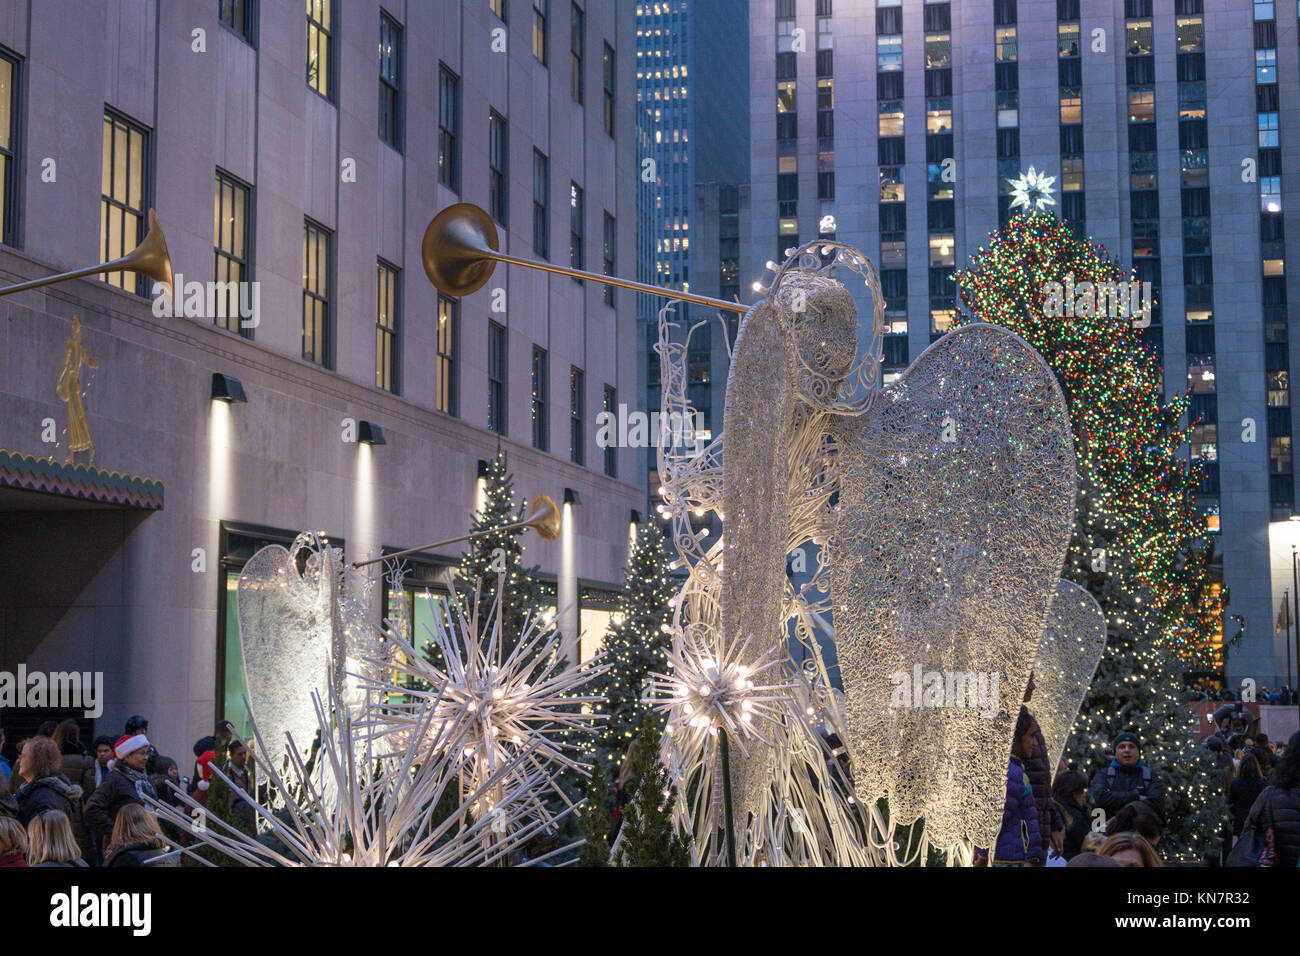 Le Centre Rockefeller décorée pour les fêtes, NYC, USA Banque D'Images